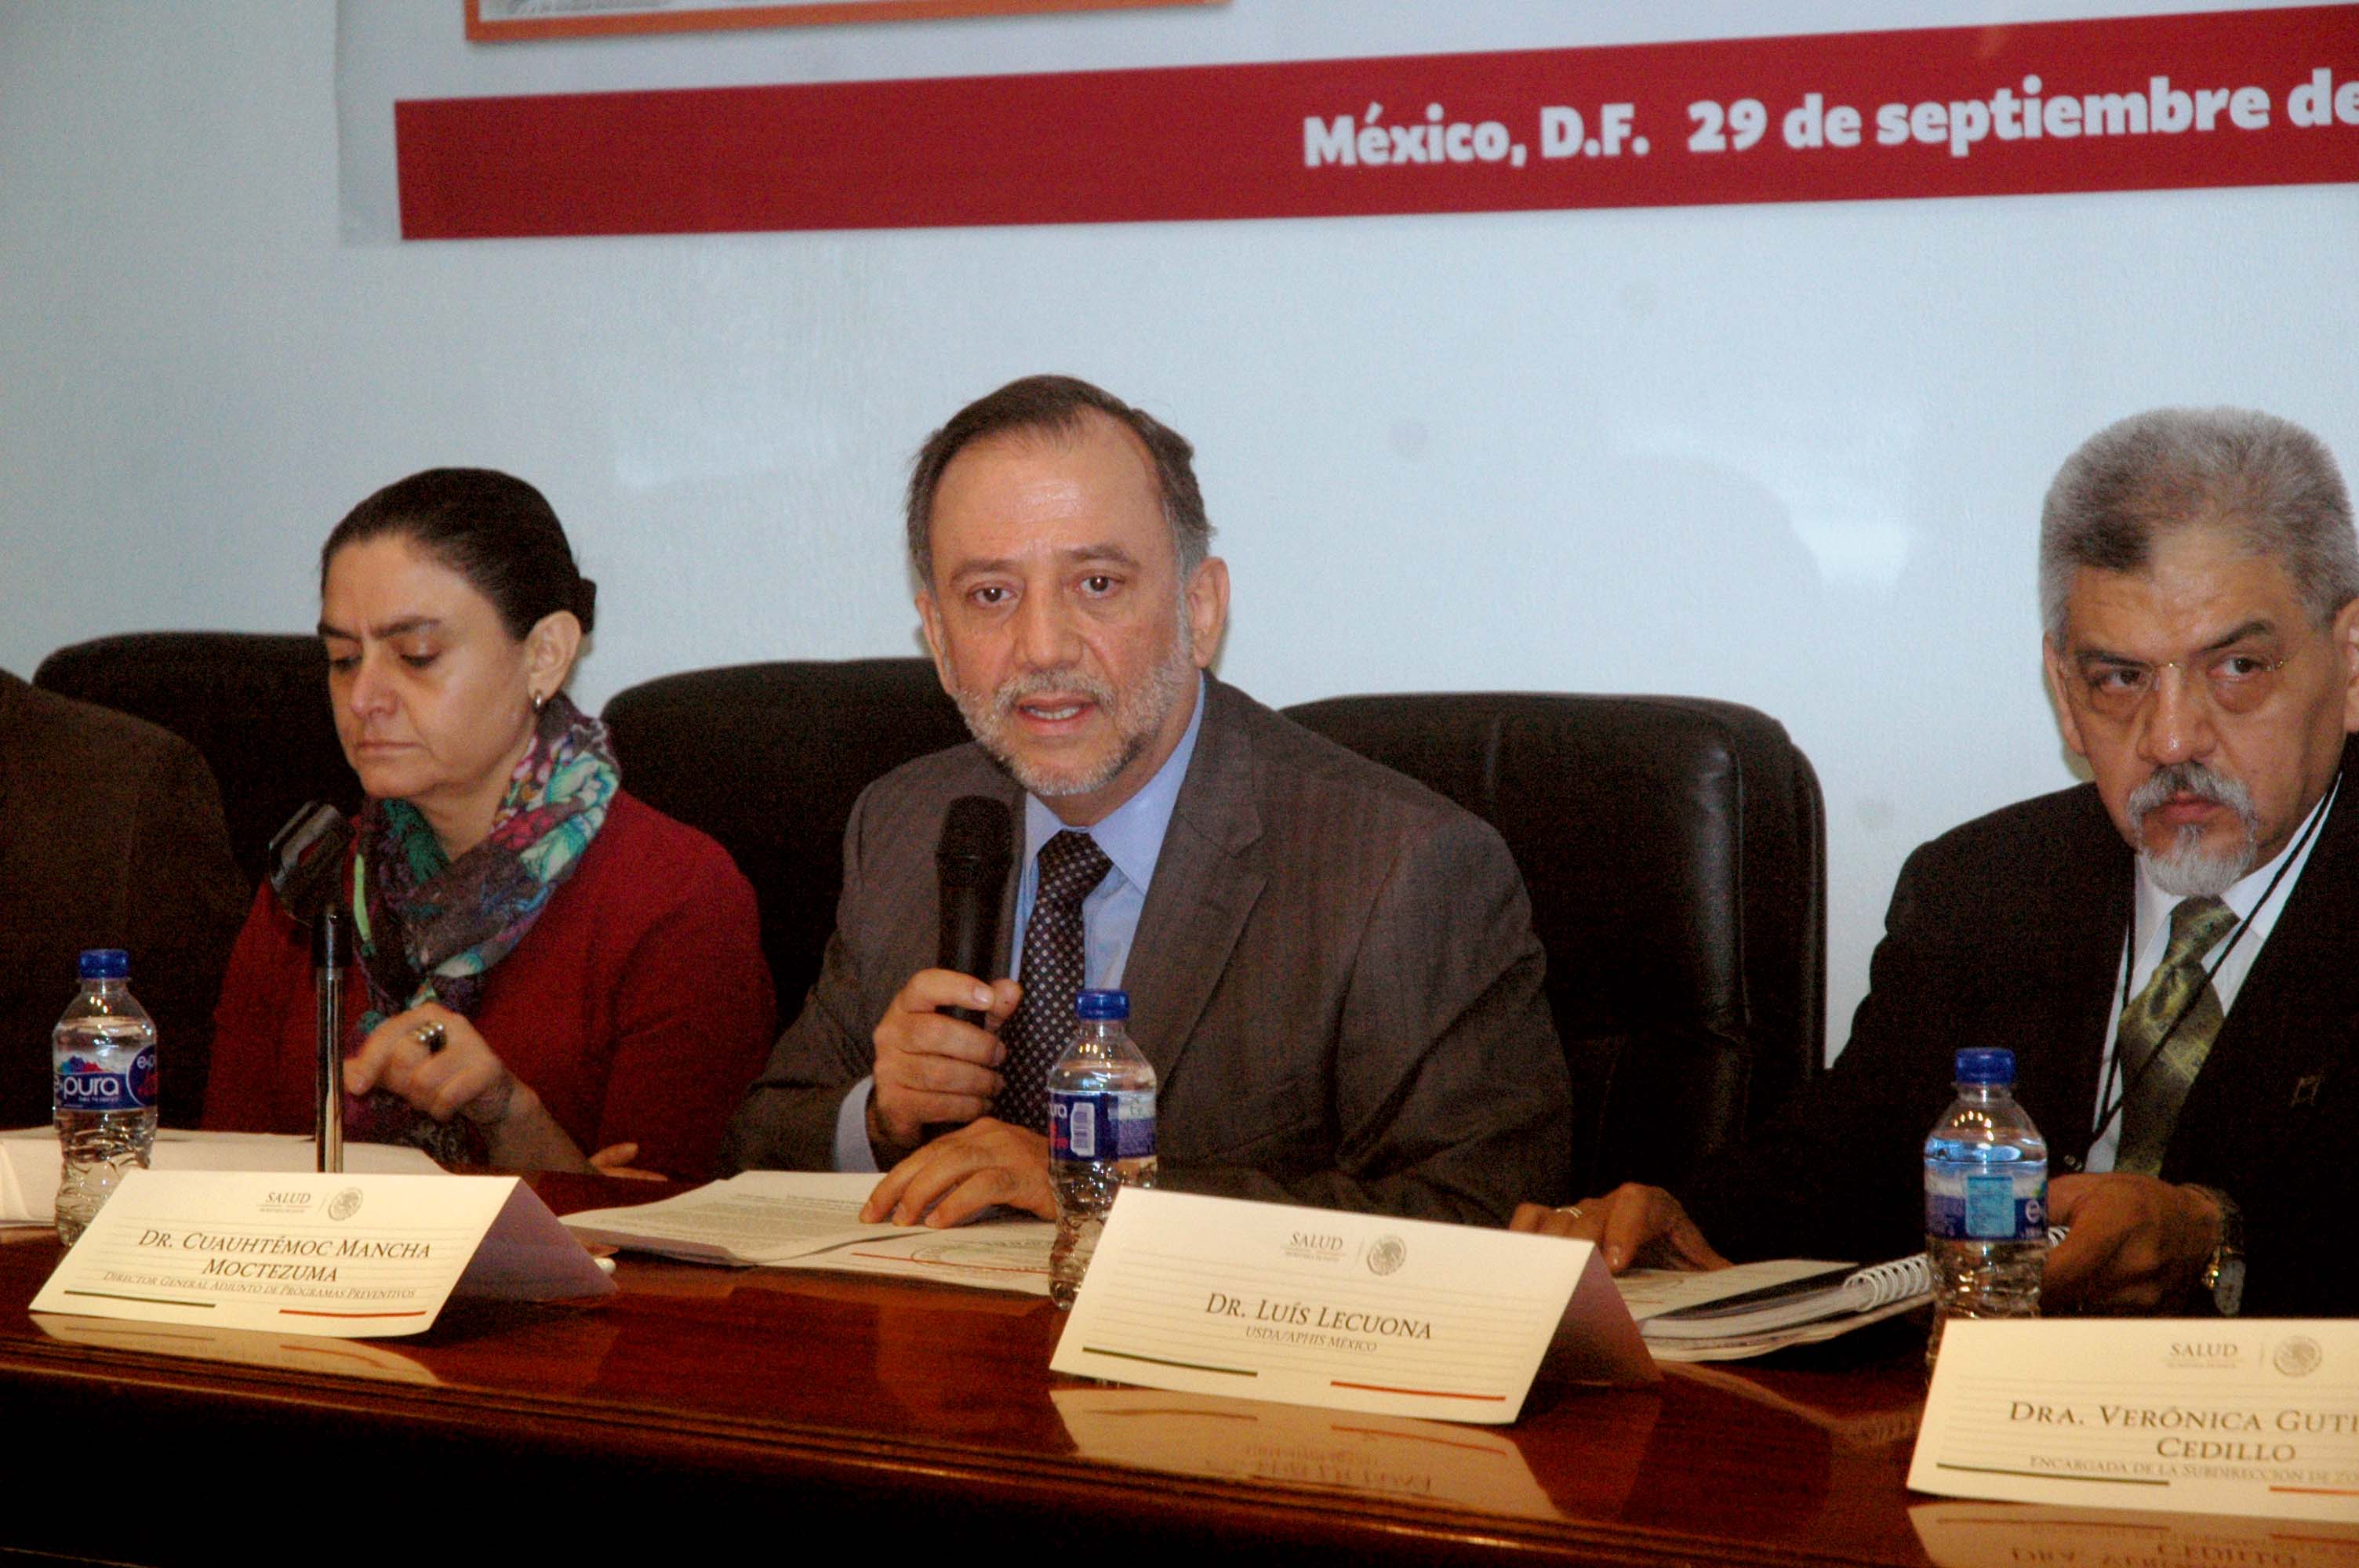 En el marco de la conmemoración del Día Mundial Contra la Rabia, dijo que México podría recibir una certificación de país con cero casos de rabia, por parte la Organización Panamericana de la Salud y de la Organización Mundial de la Salud.